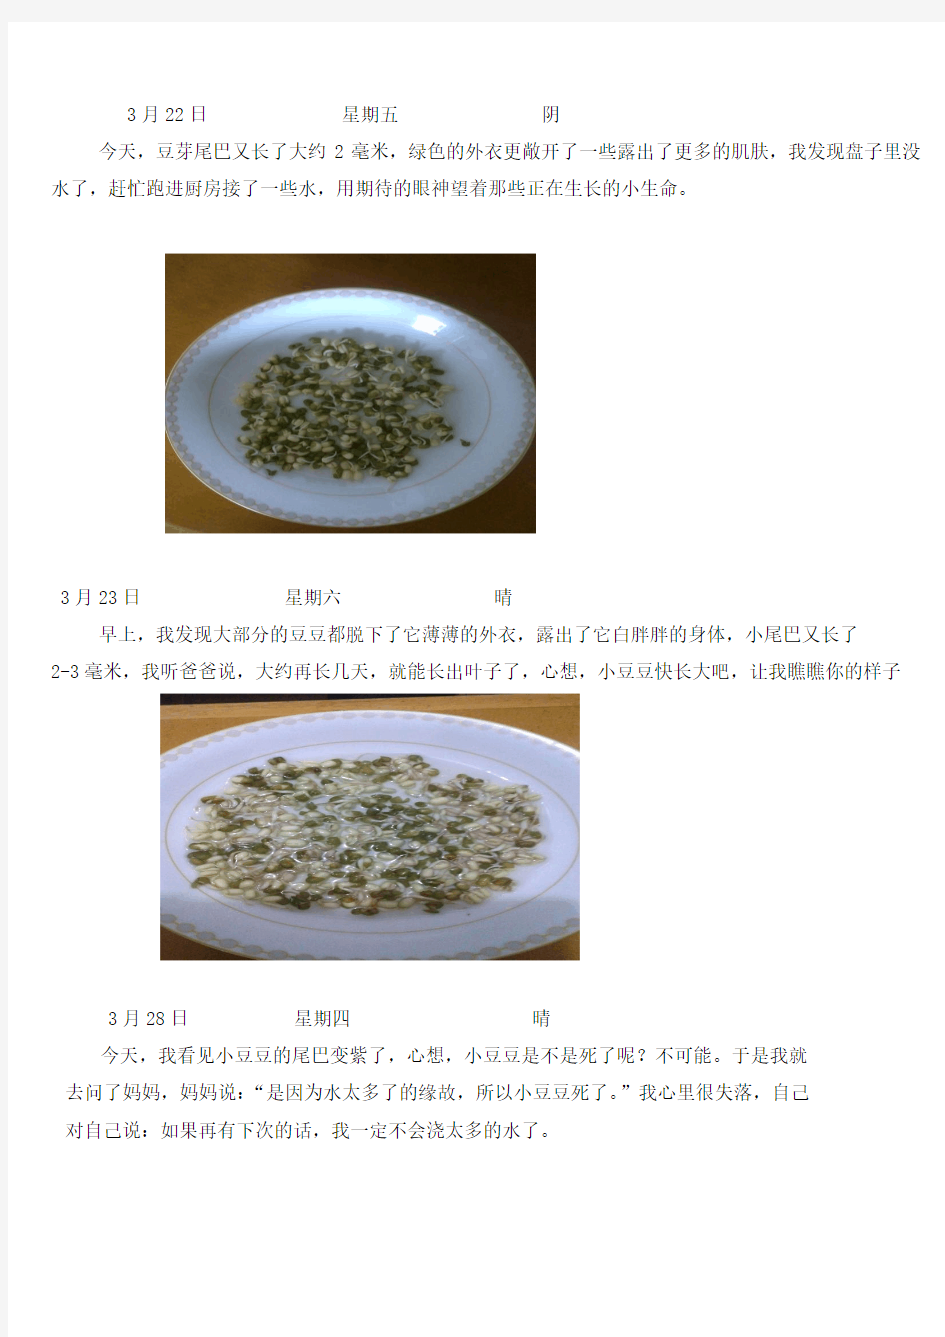 许明湘 绿豆的生长过程观察日记五则